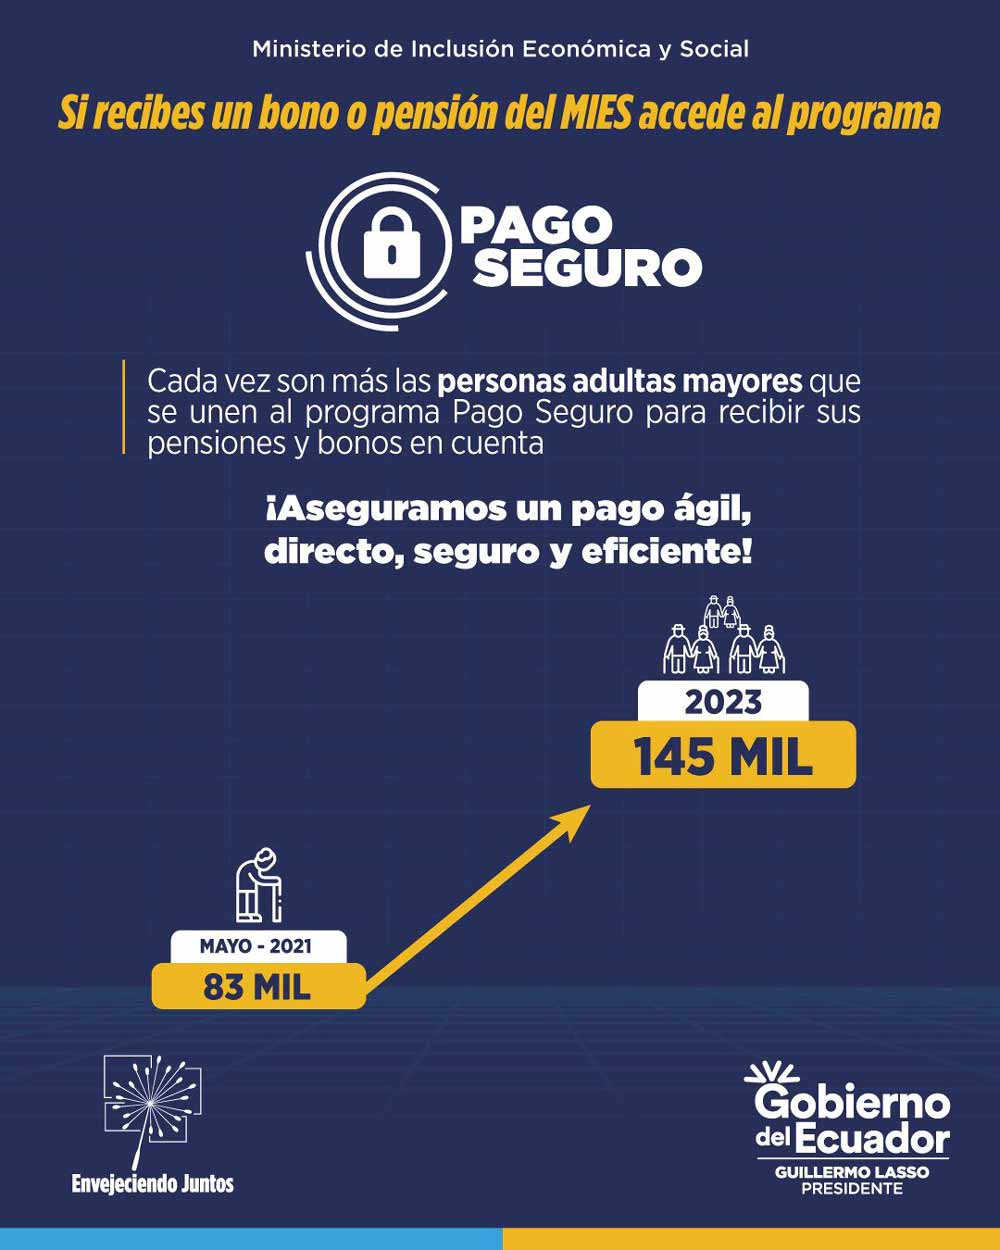 En el #GobiernoDelEcuador, trabajamos intensamente para garantizar la seguridad y protección de nuestros adultos mayores.